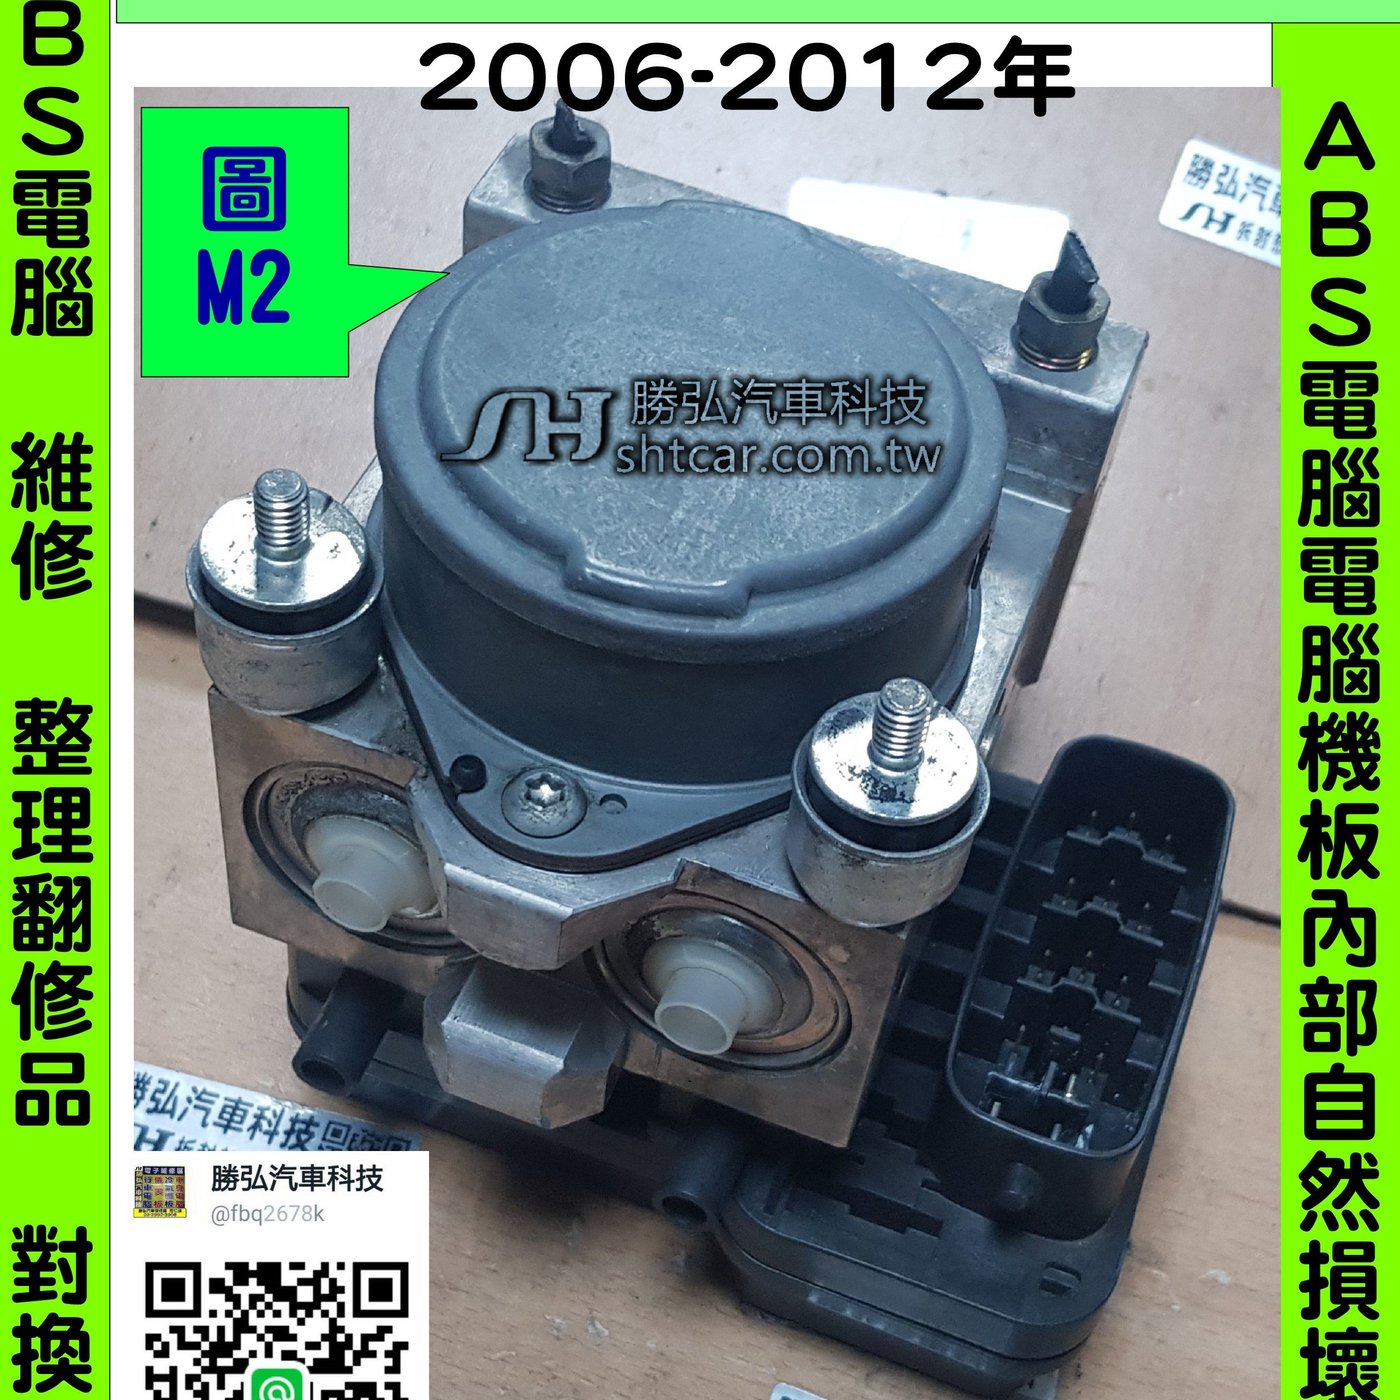 三菱ZINGER 鈴哥2.4 M2 ADVICS MN102450 ABS 電腦幫浦防滑剎車控制模組 